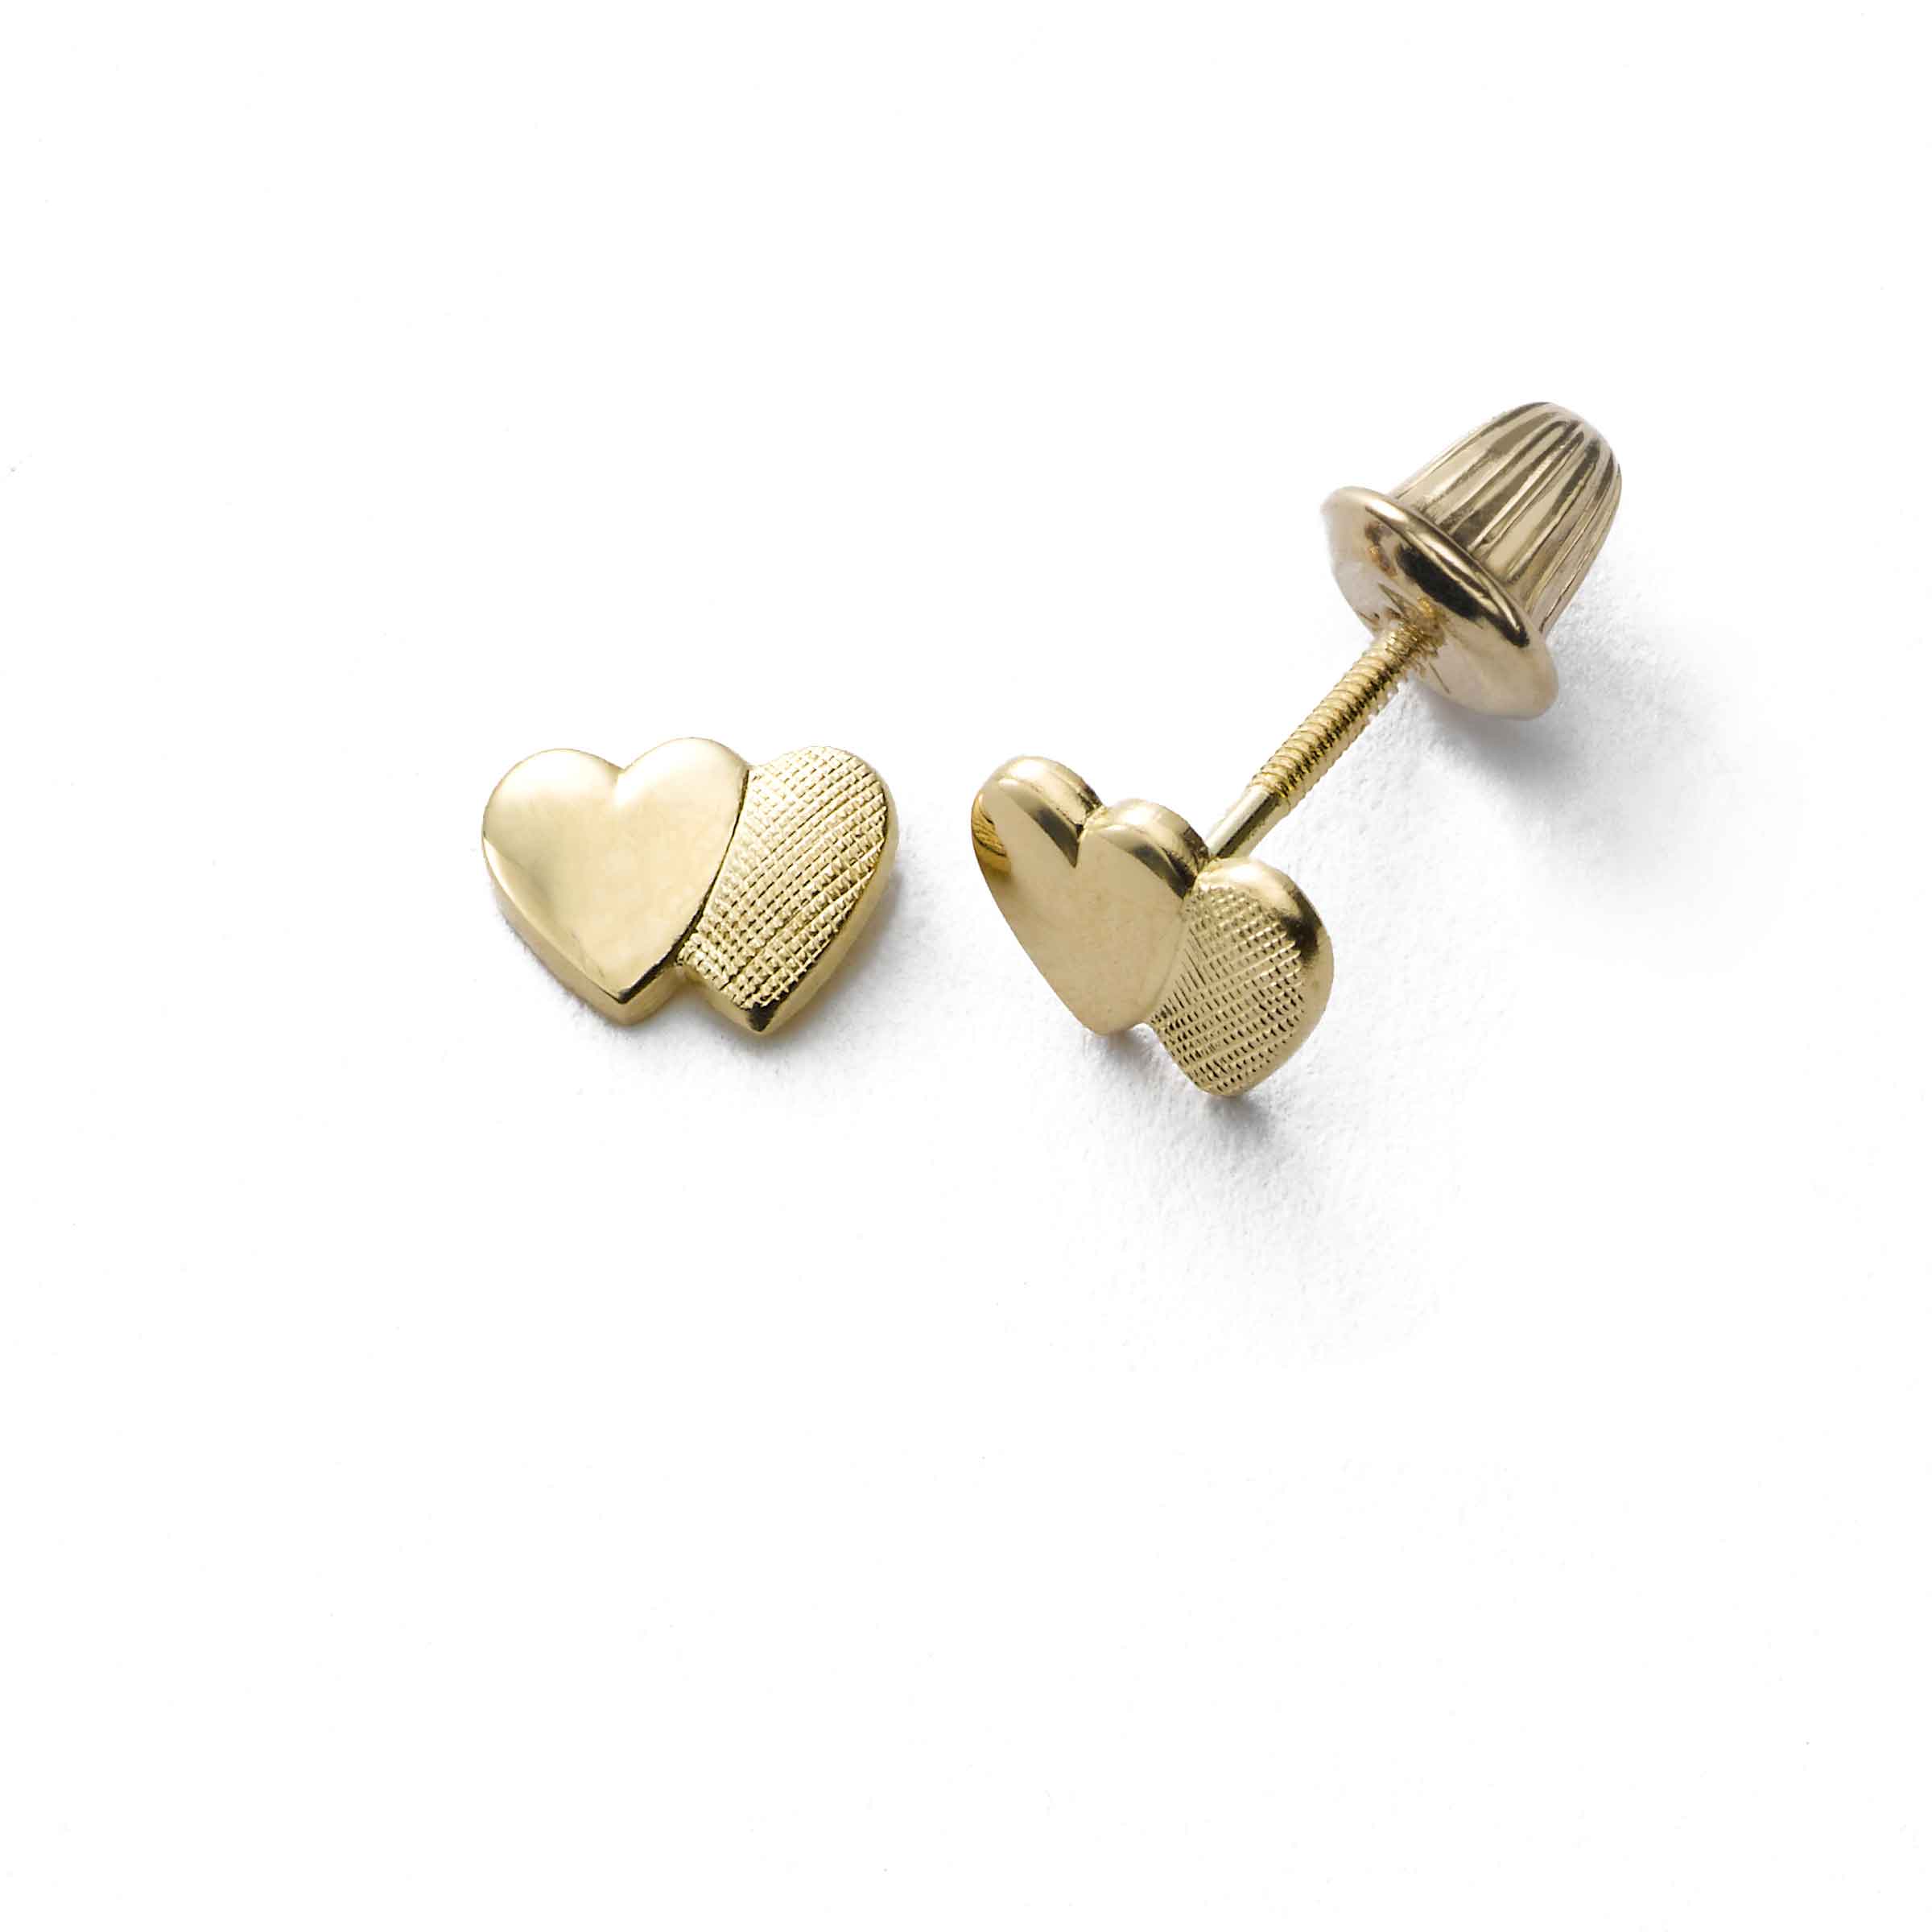 Baby/Kids Diamond Earrings Screw Back .20 TCW | 14K White Gold